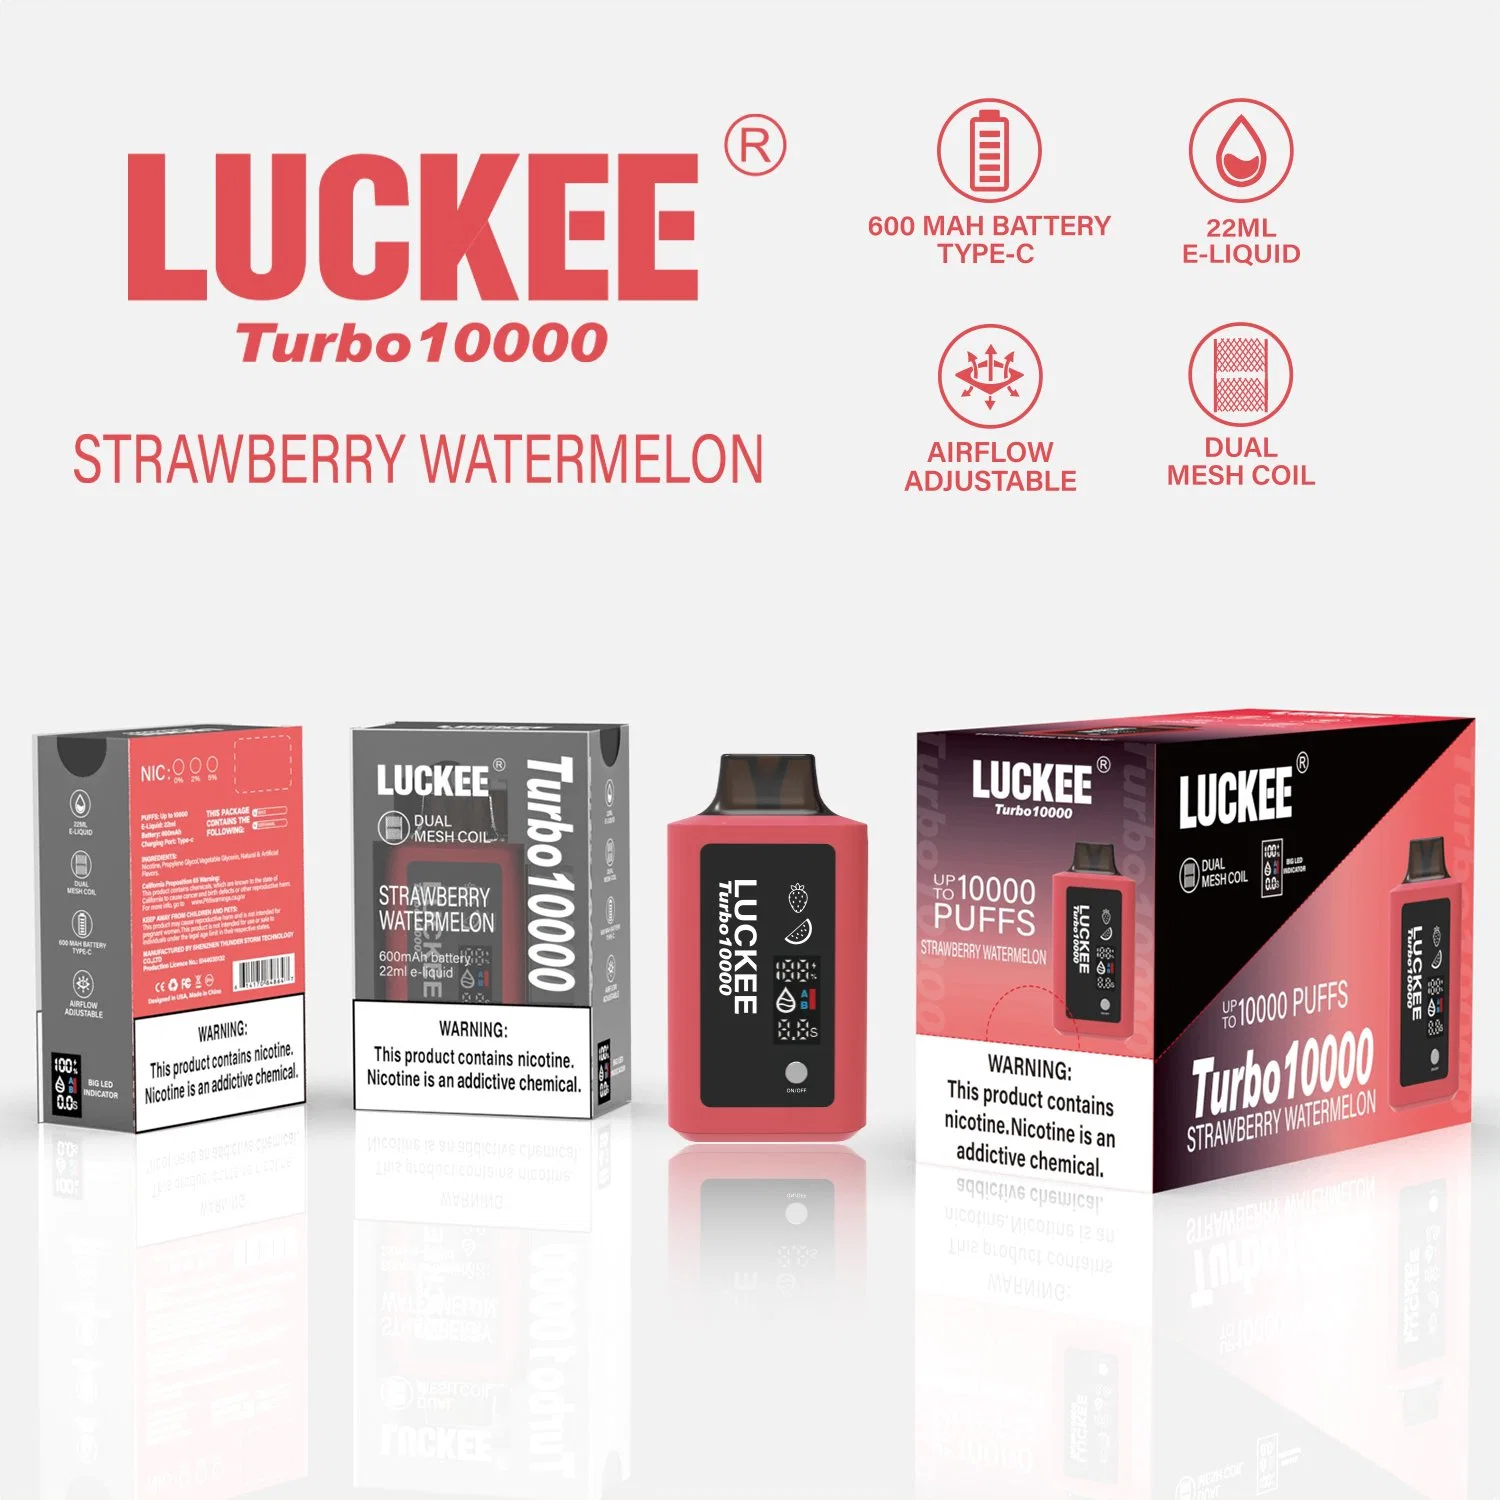 USA Vente en gros Luckee Turbo 10000 Puff Electronic cigarette E-cigarette Hookah Shisha stylo Vape jetable